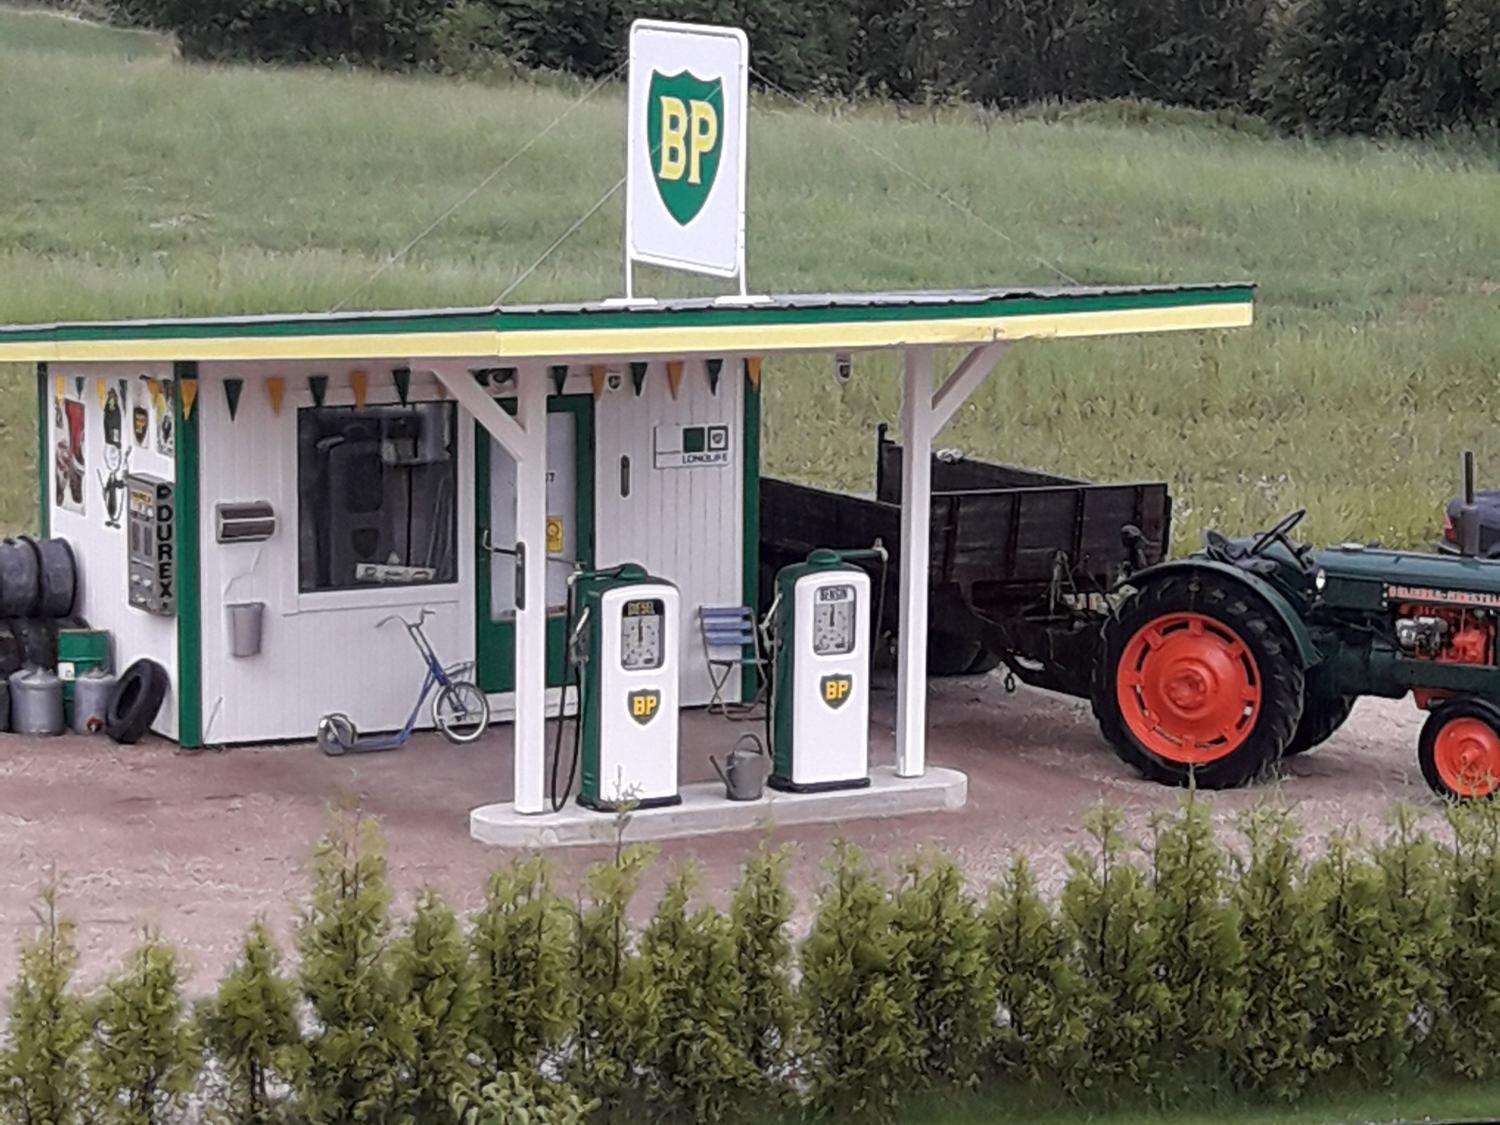 BP "Nostalgia-gas station" in Gällsta